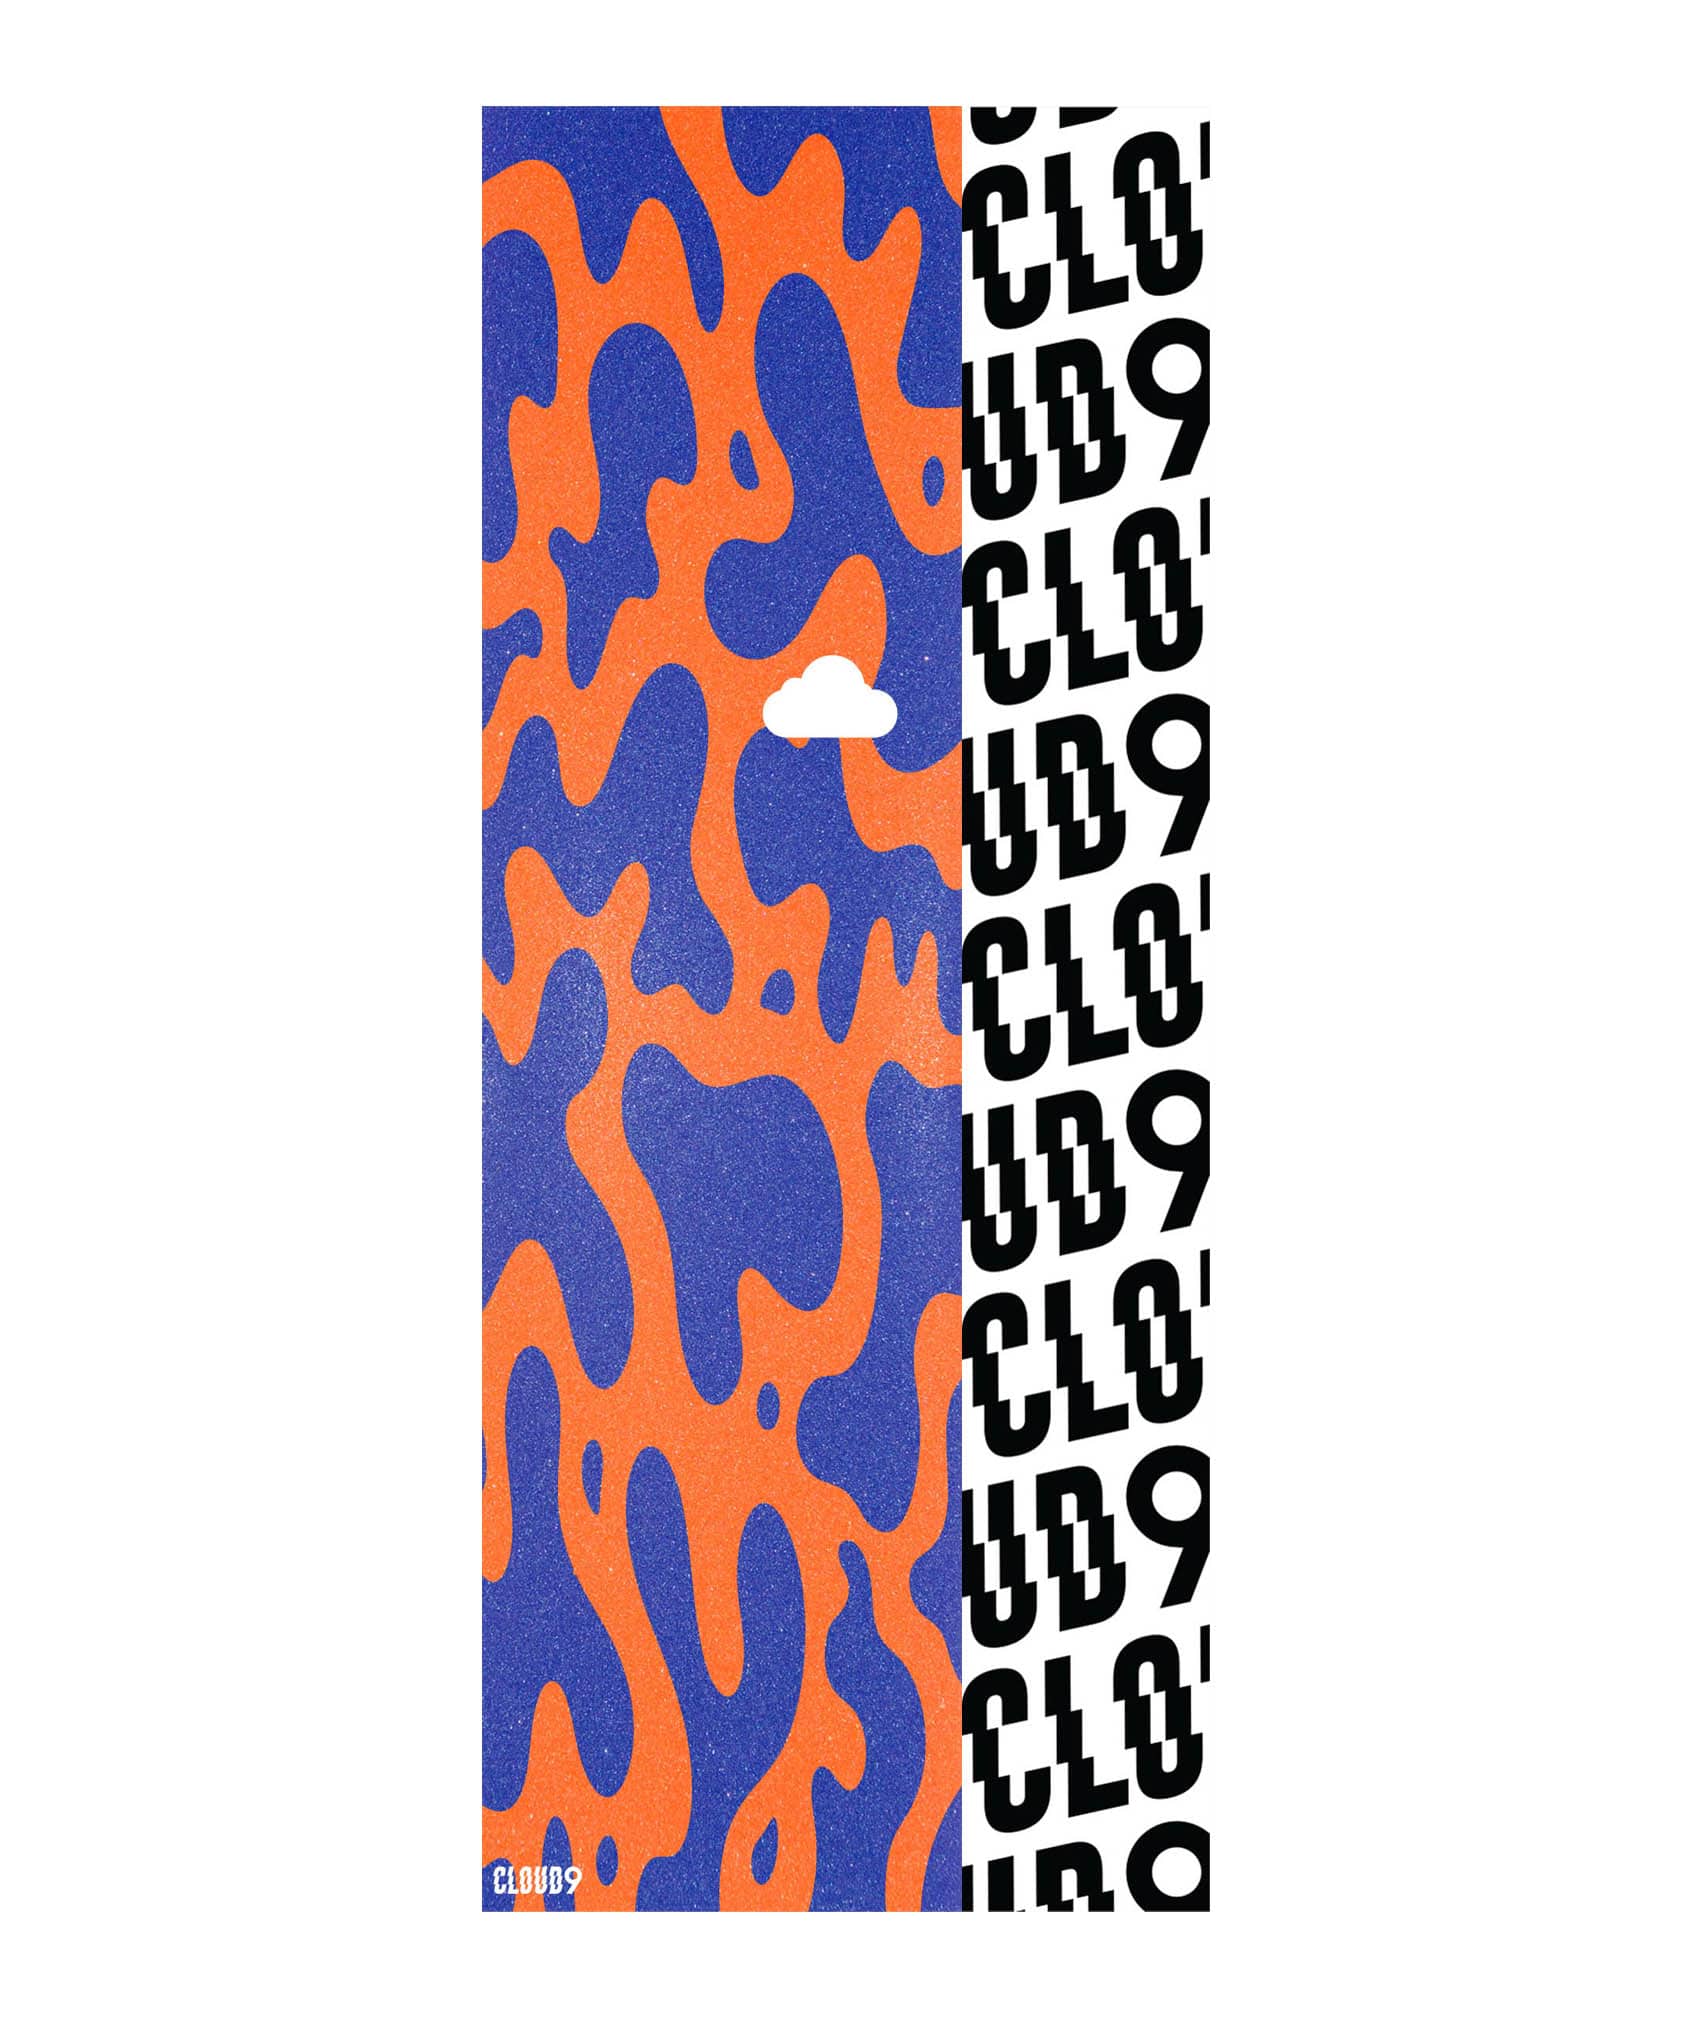 Cloud 9 Fancy Grip Tape - Image 1